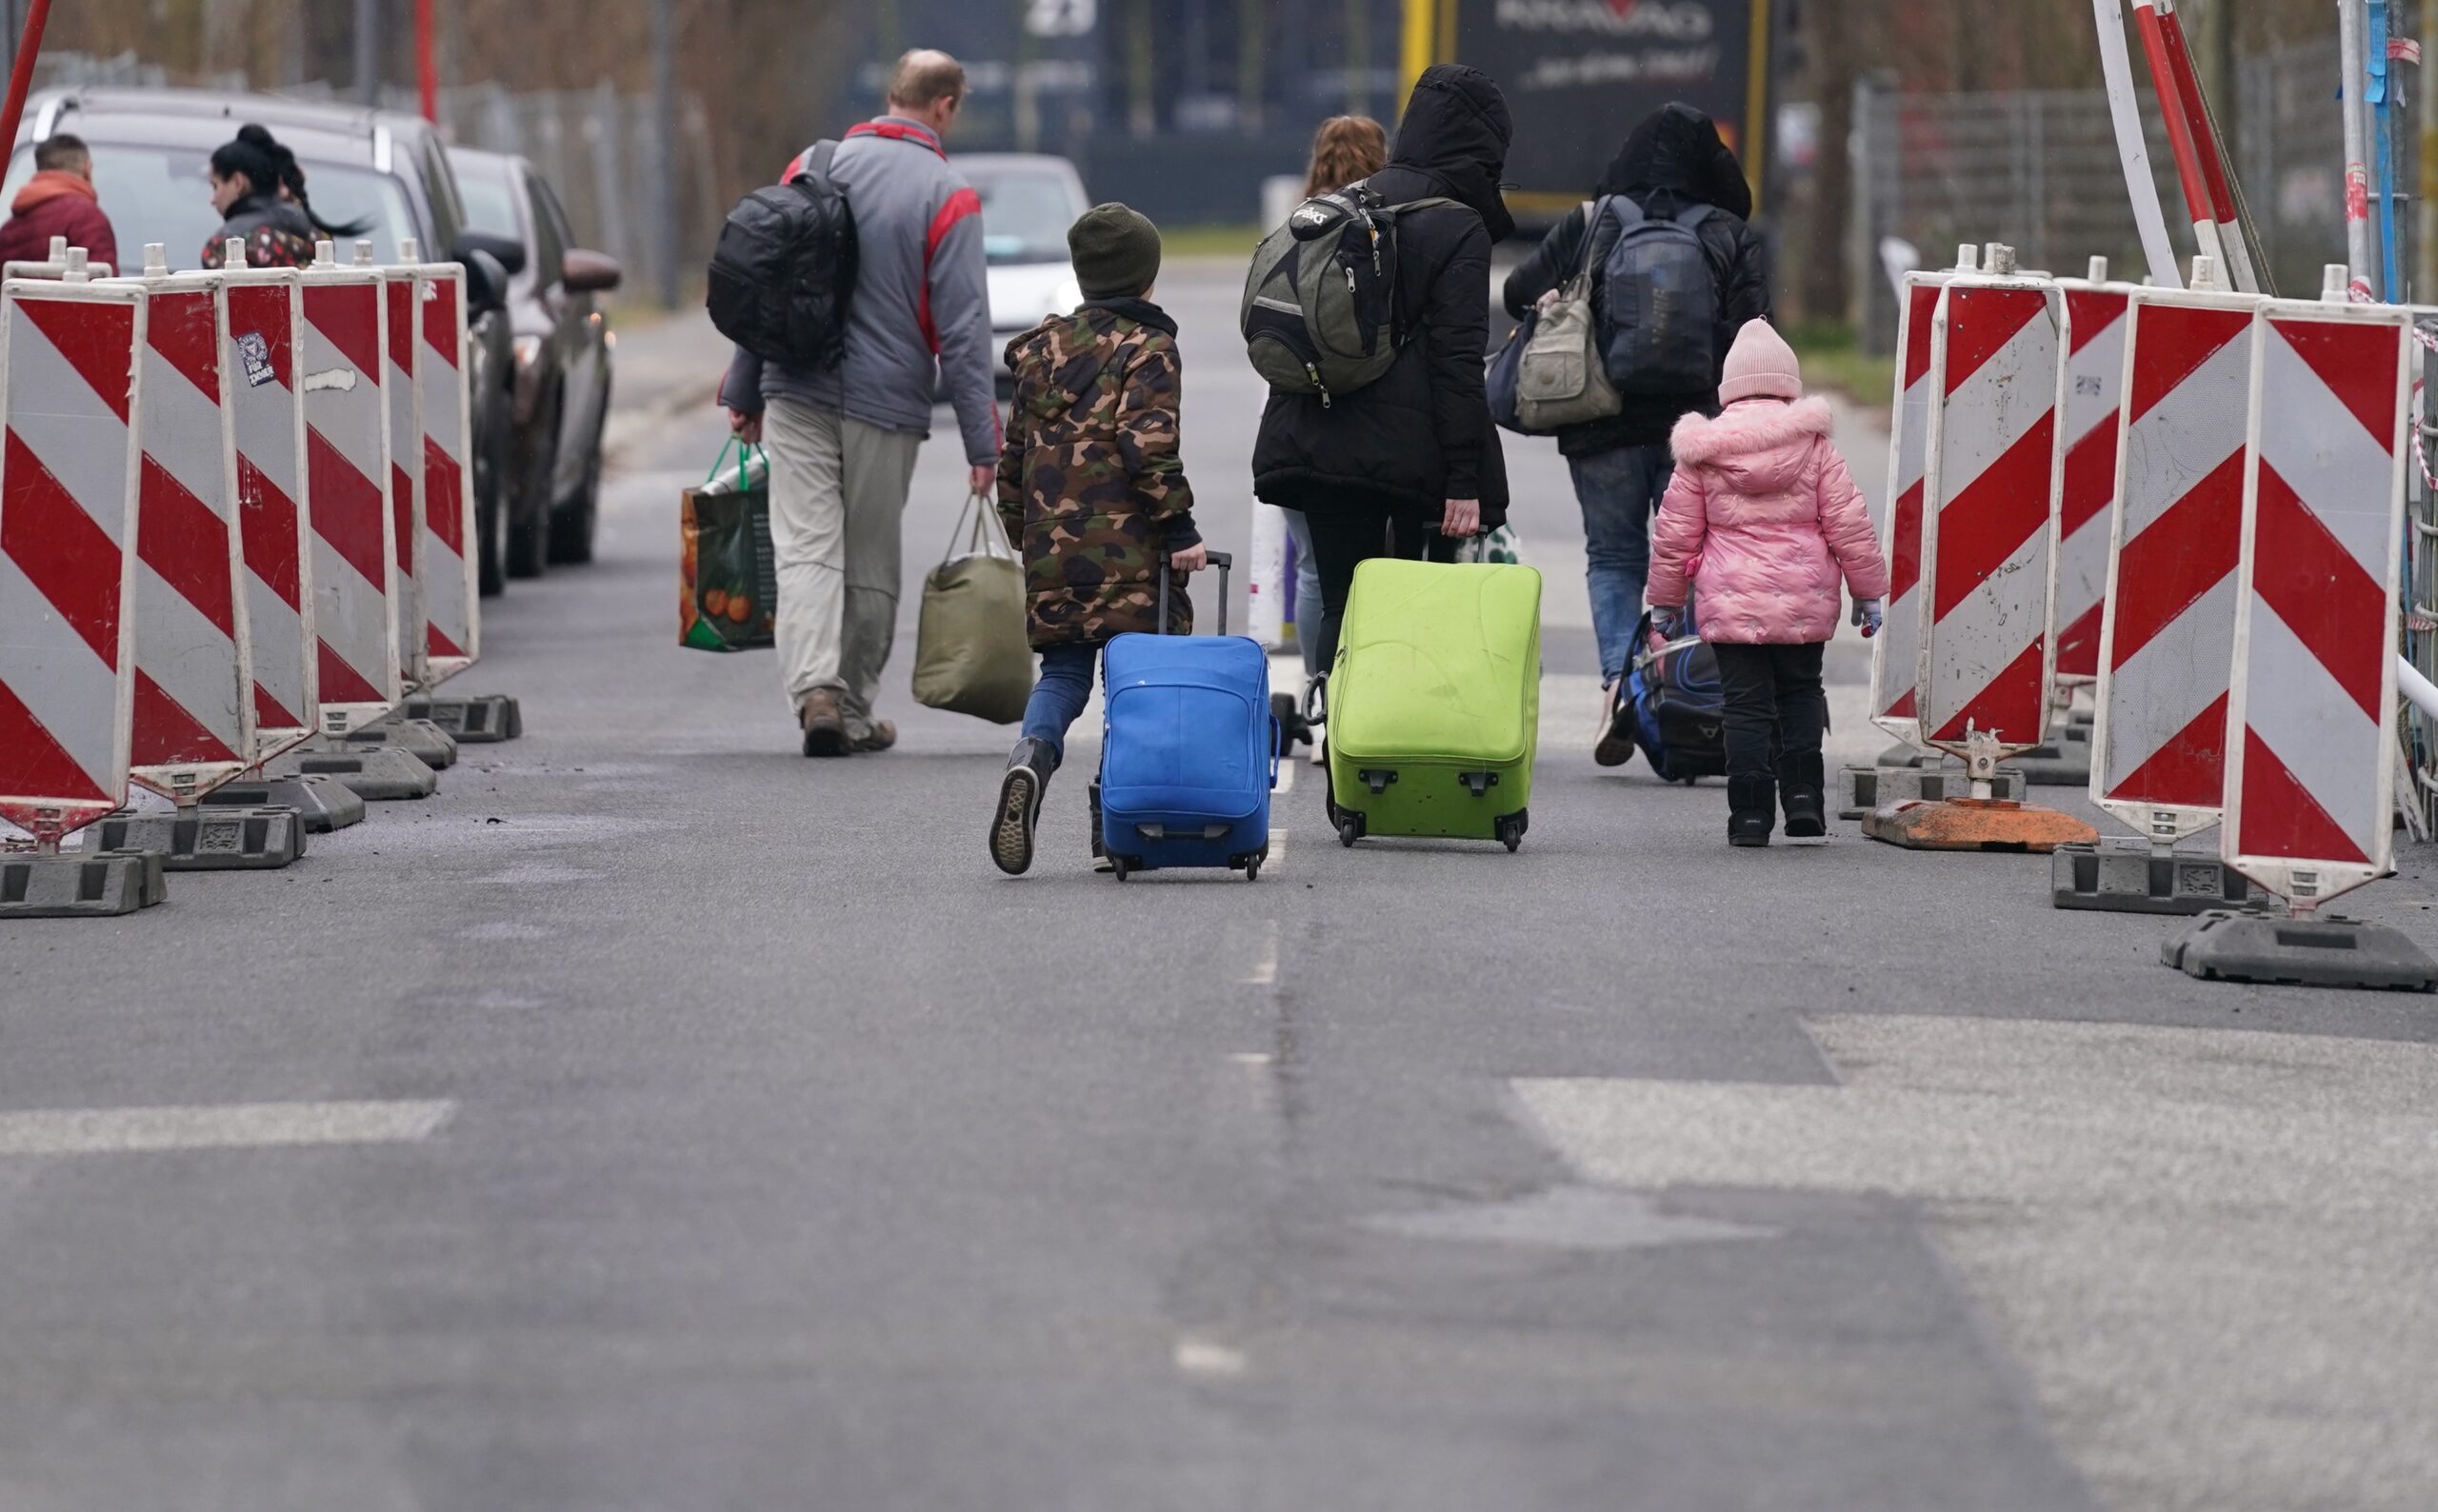 Ukrainische Geflüchtete mit Gepäck auf einer Straße in Harburg.